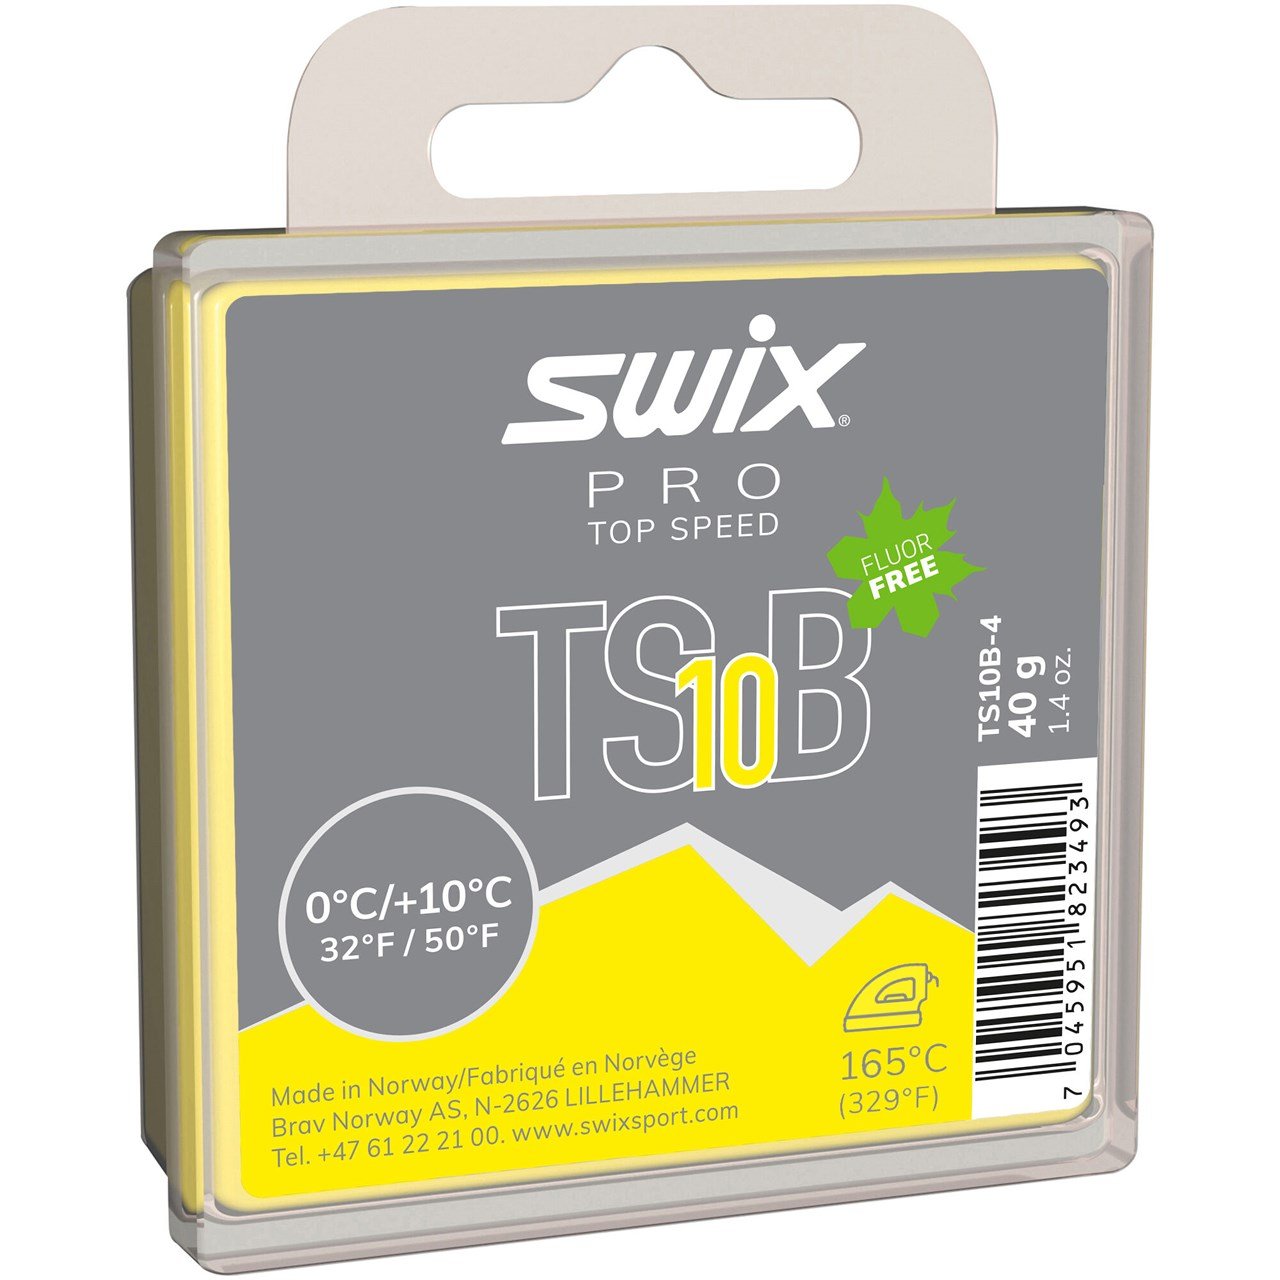 Swix TS10 Black 0°C/+10°C 40g